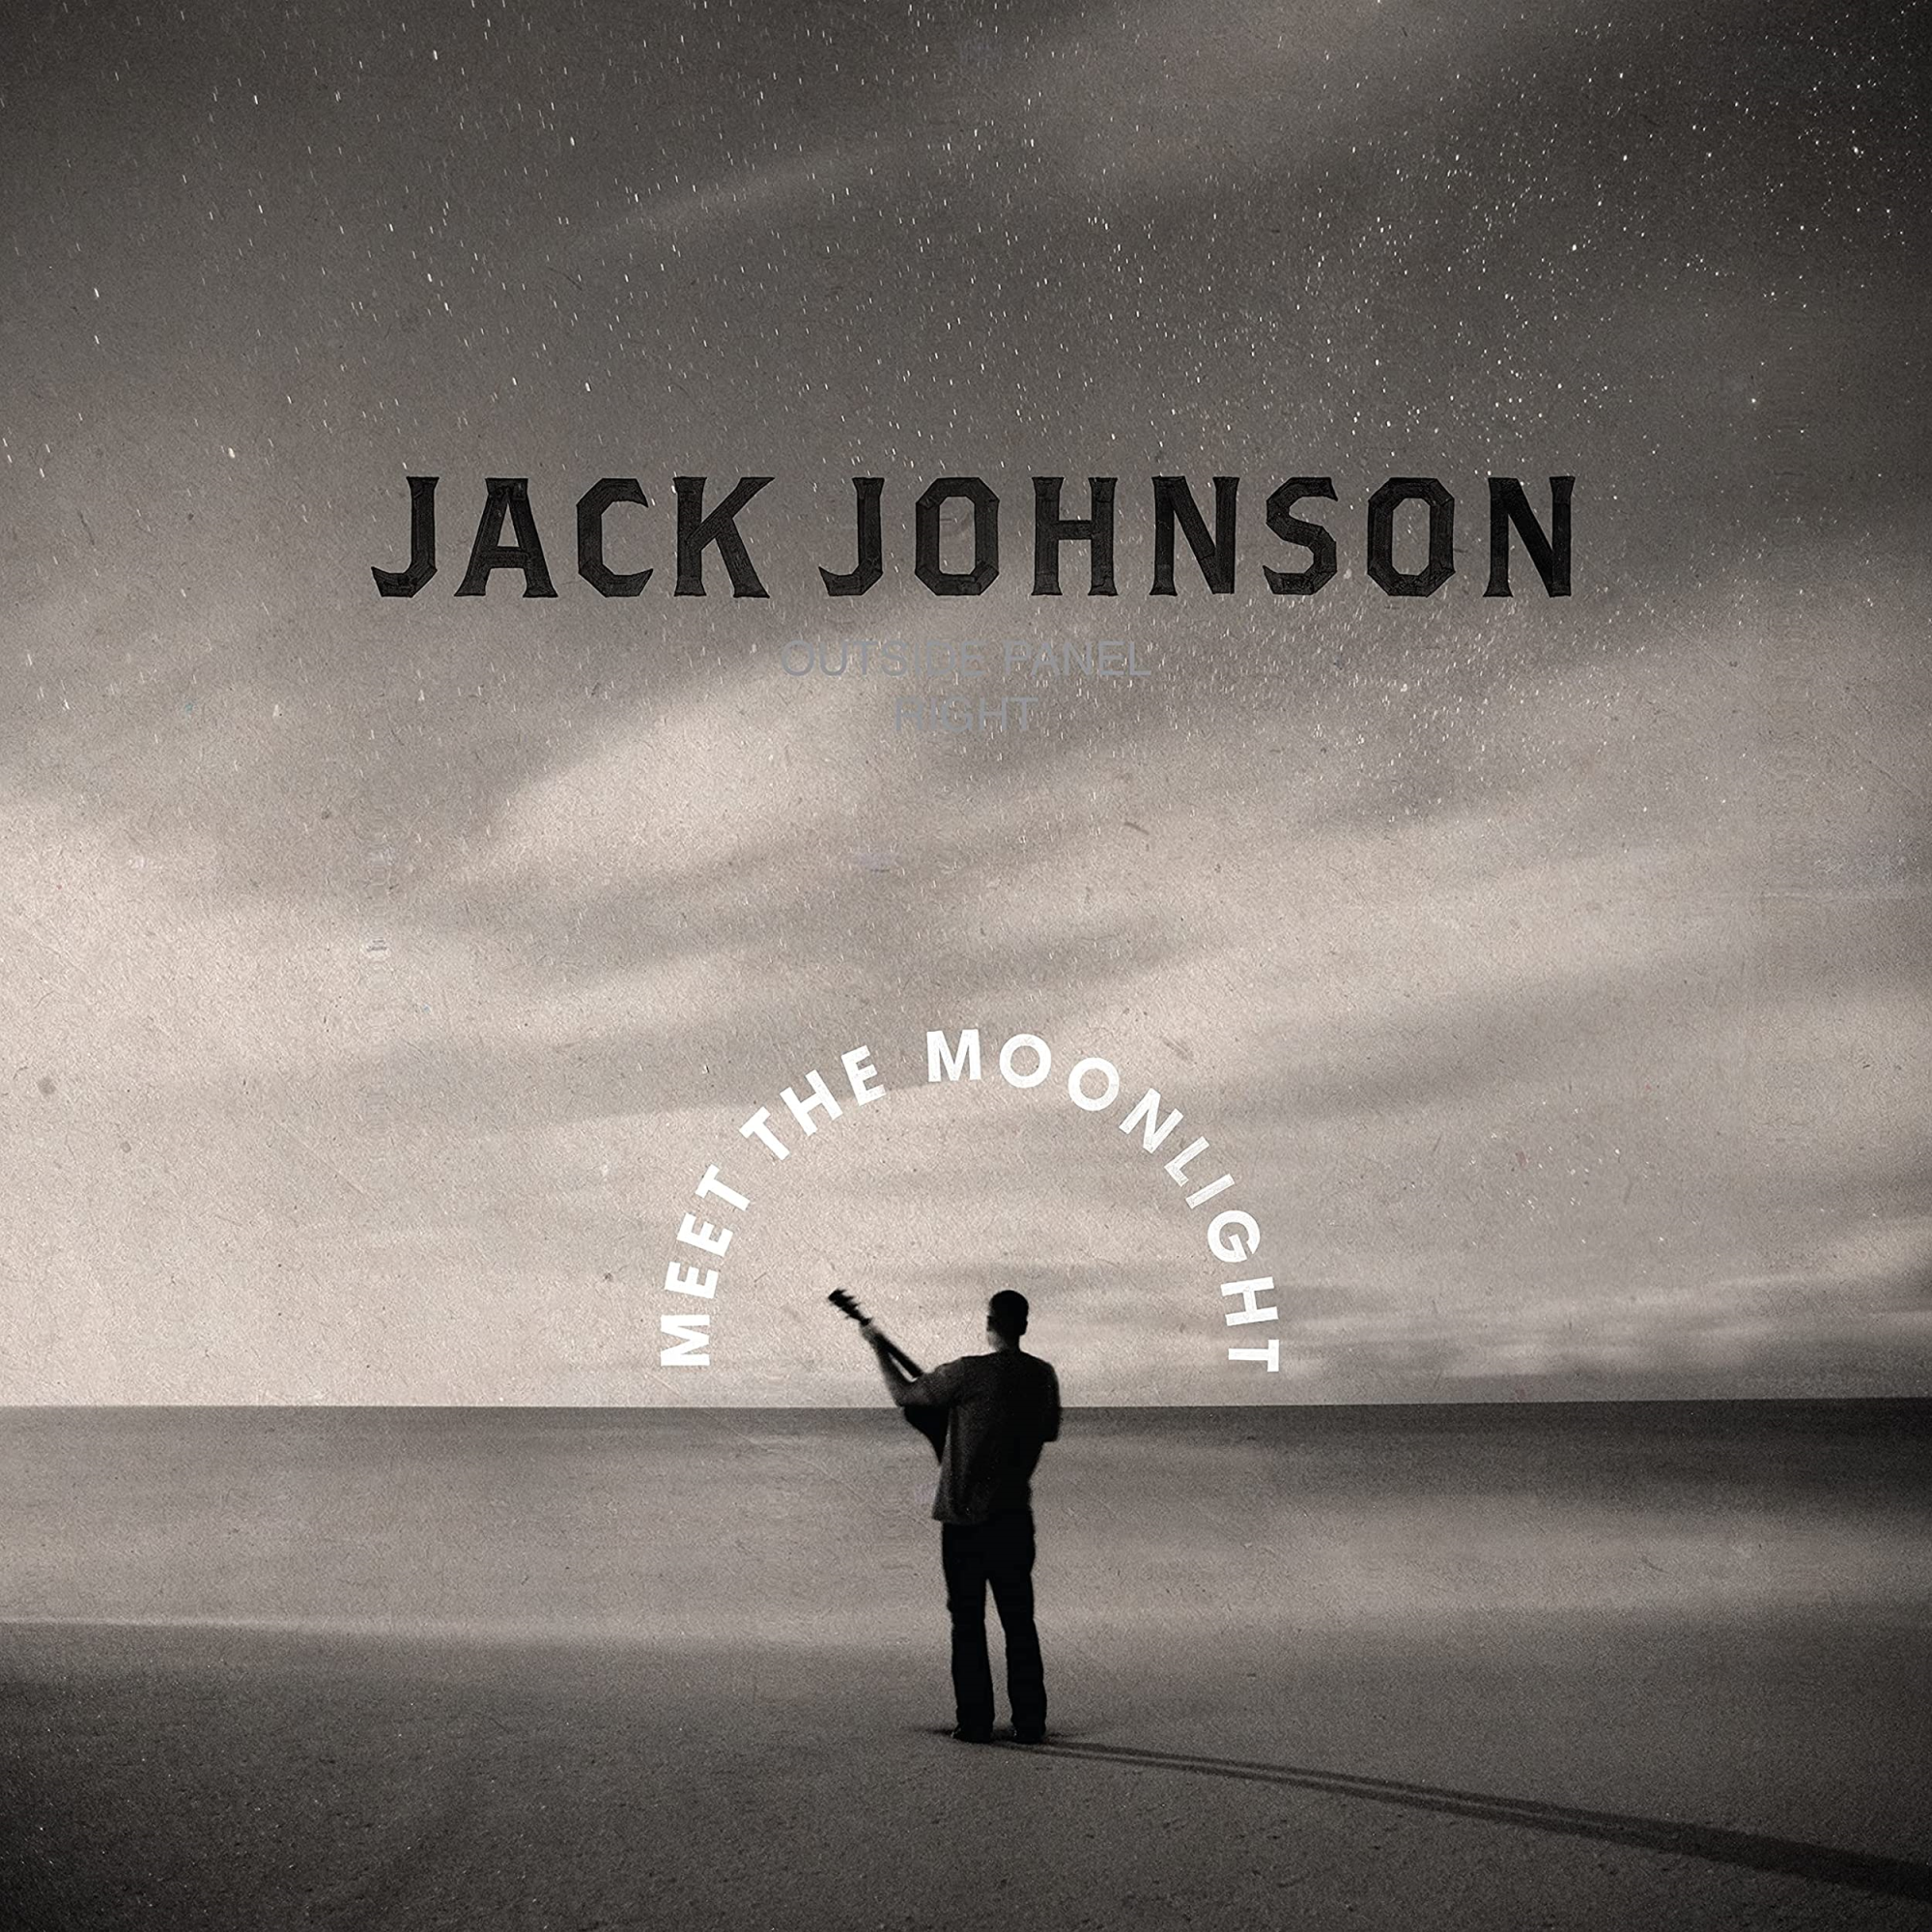 Vinile Jack Johnson - Meet The Moonlight [Lp] (Silver 180 Gram Vinyl, Indie-Retail Exclusive) NUOVO SIGILLATO, EDIZIONE DEL 24/06/2022 SUBITO DISPONIBILE